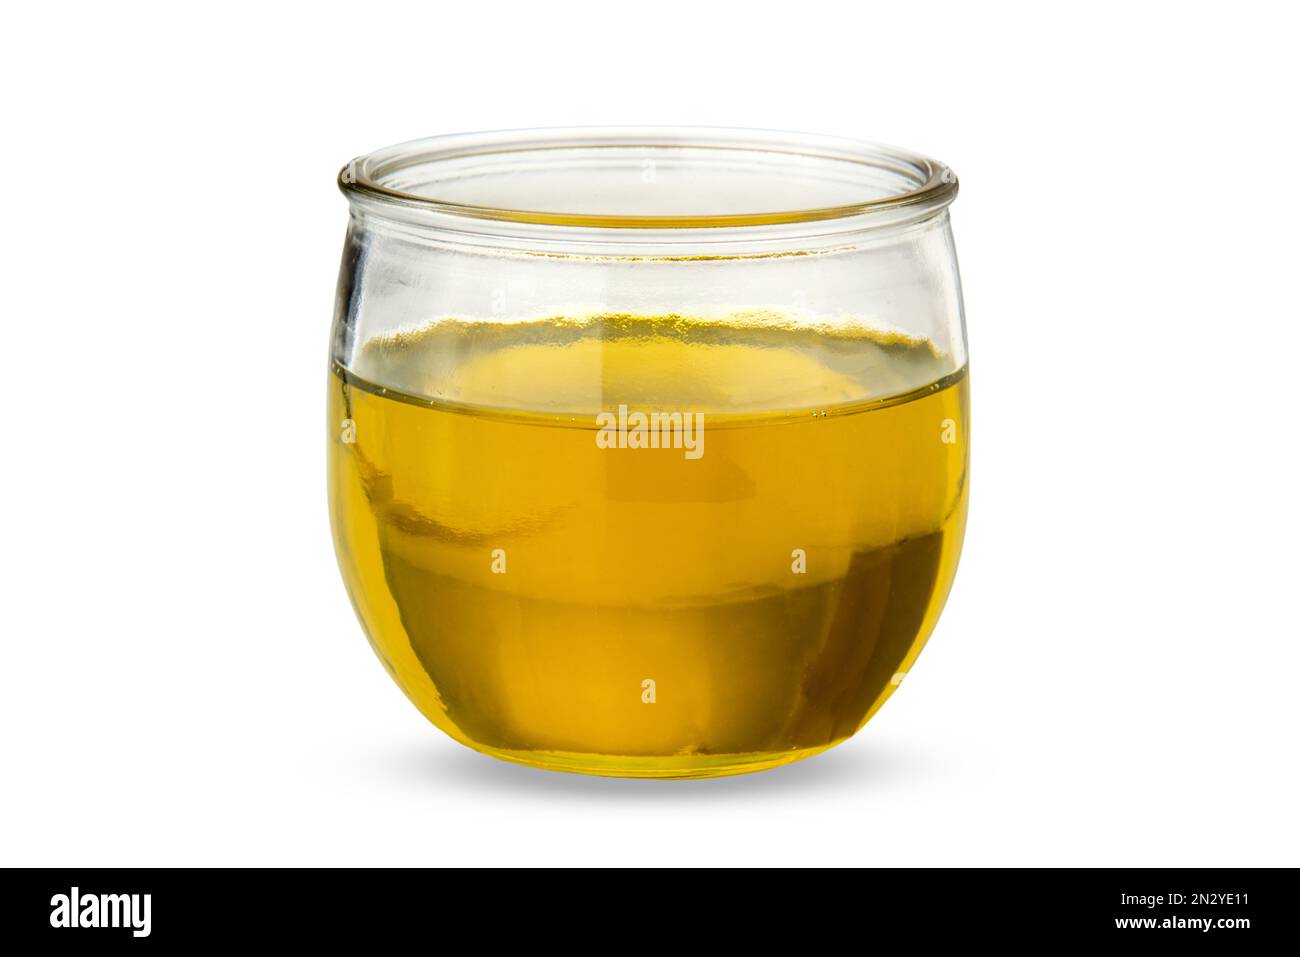 Aceite de oliva virgen extra en vaso de vidrio, aislado en blanco con ruta de recorte incluida Foto de stock